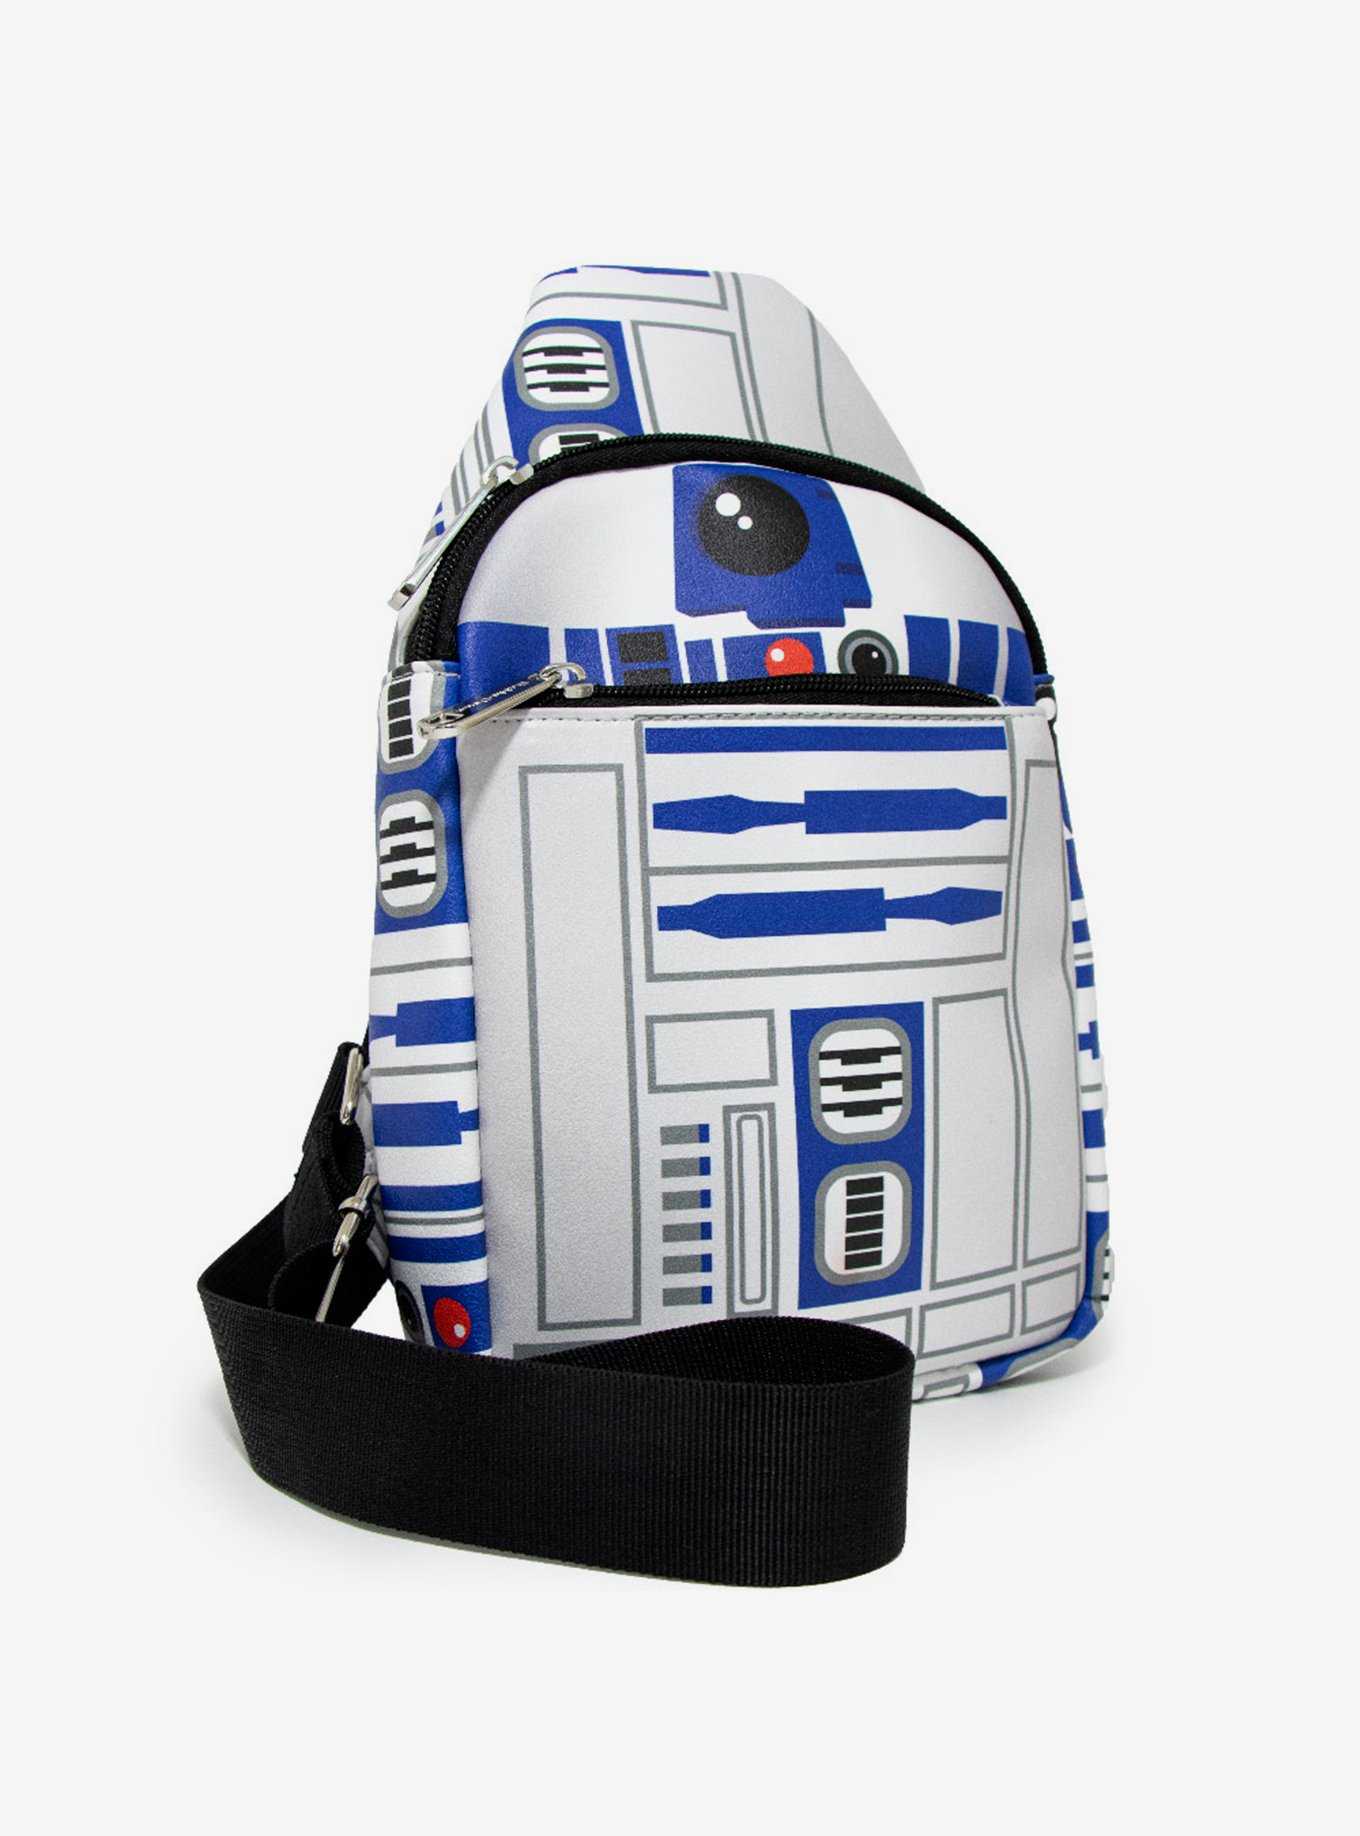 Star Wars R2-D2 Crossbody Droid Bag, , hi-res